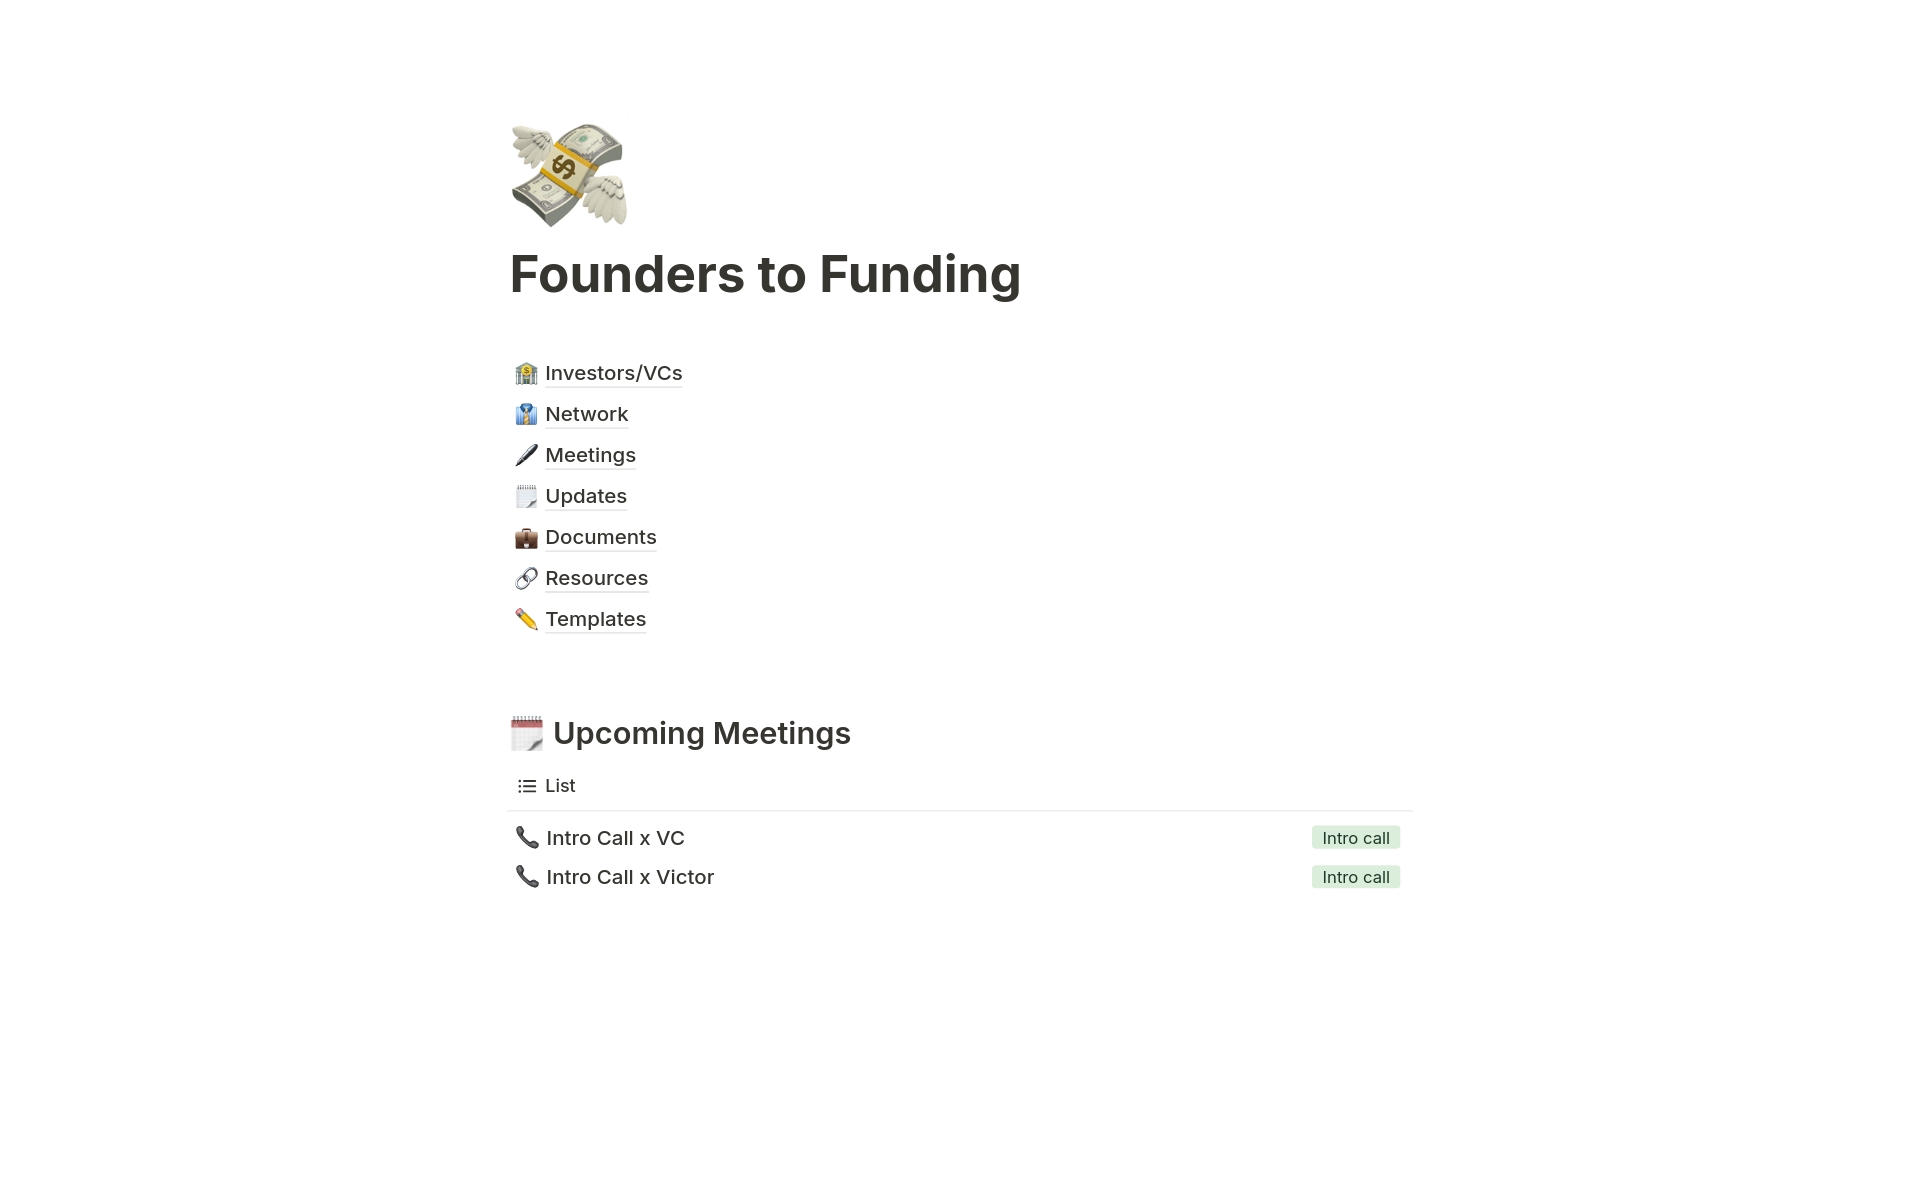 Vista previa de una plantilla para Founders to Funding